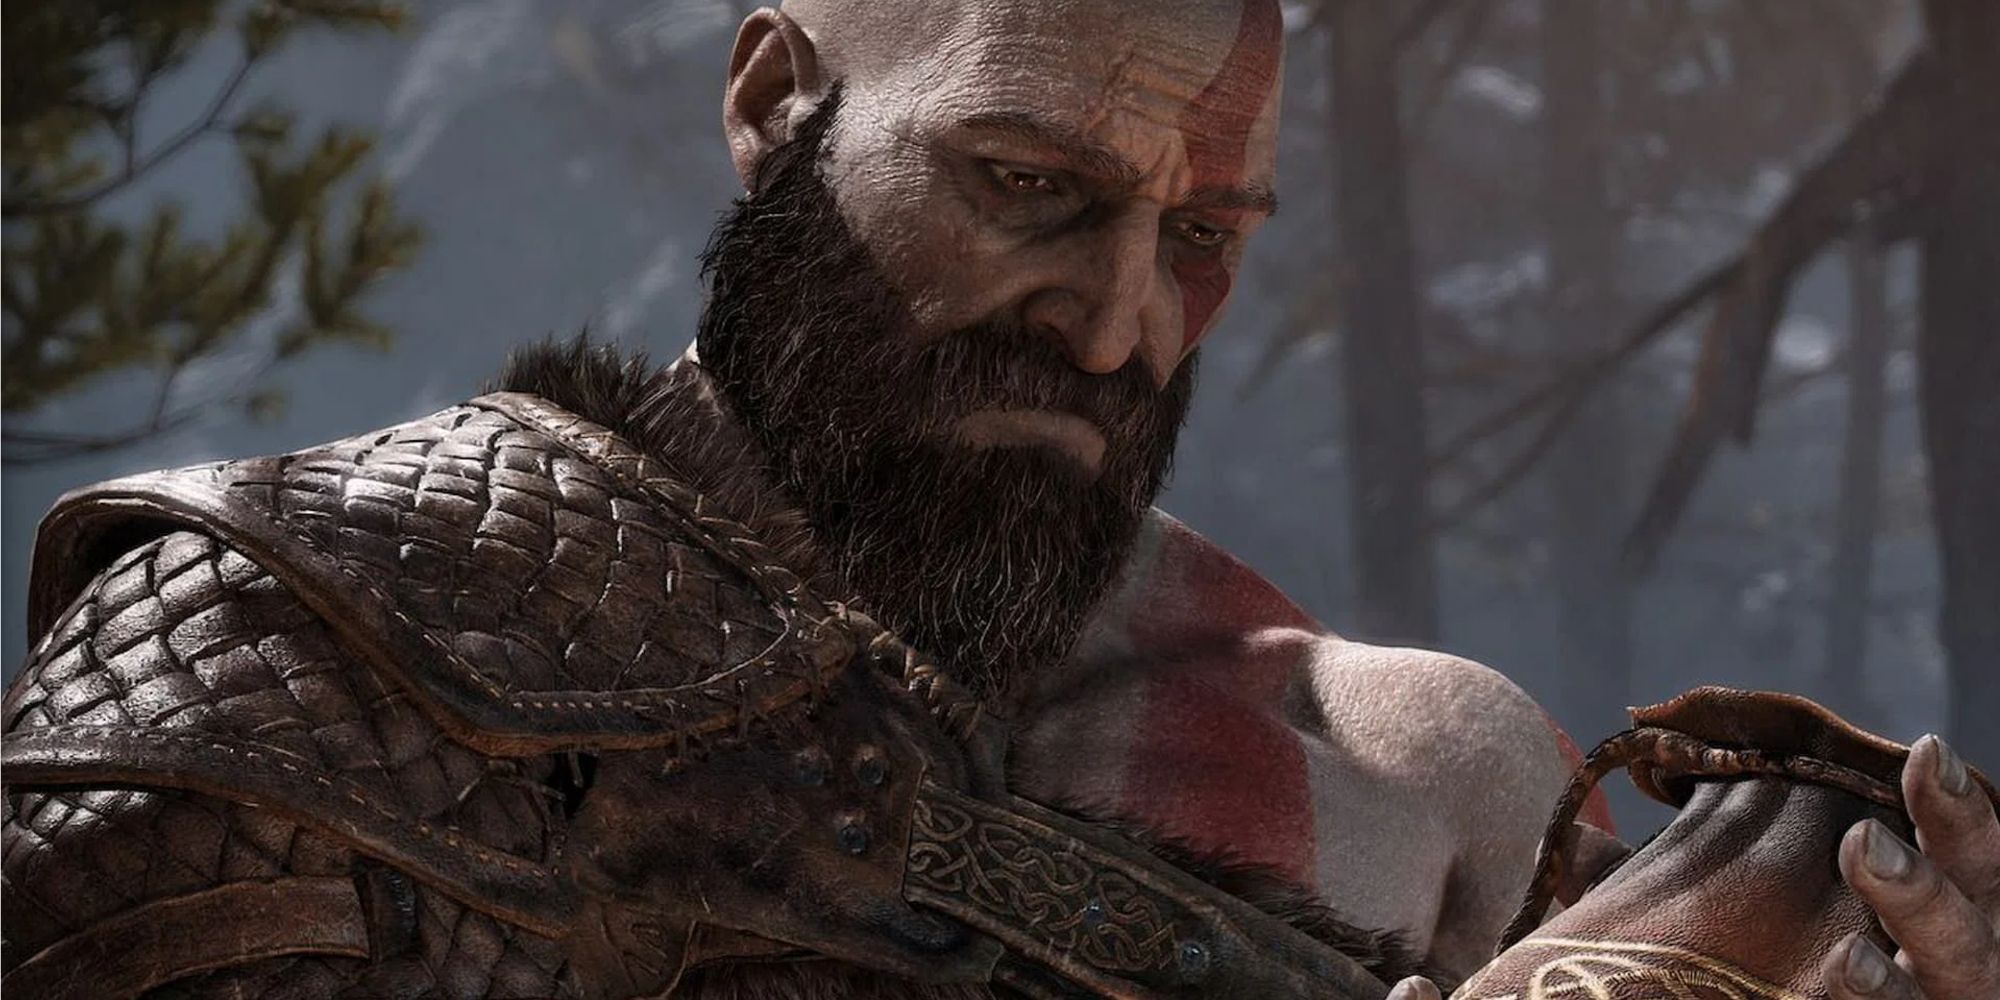 kratos looking sad holding a bag